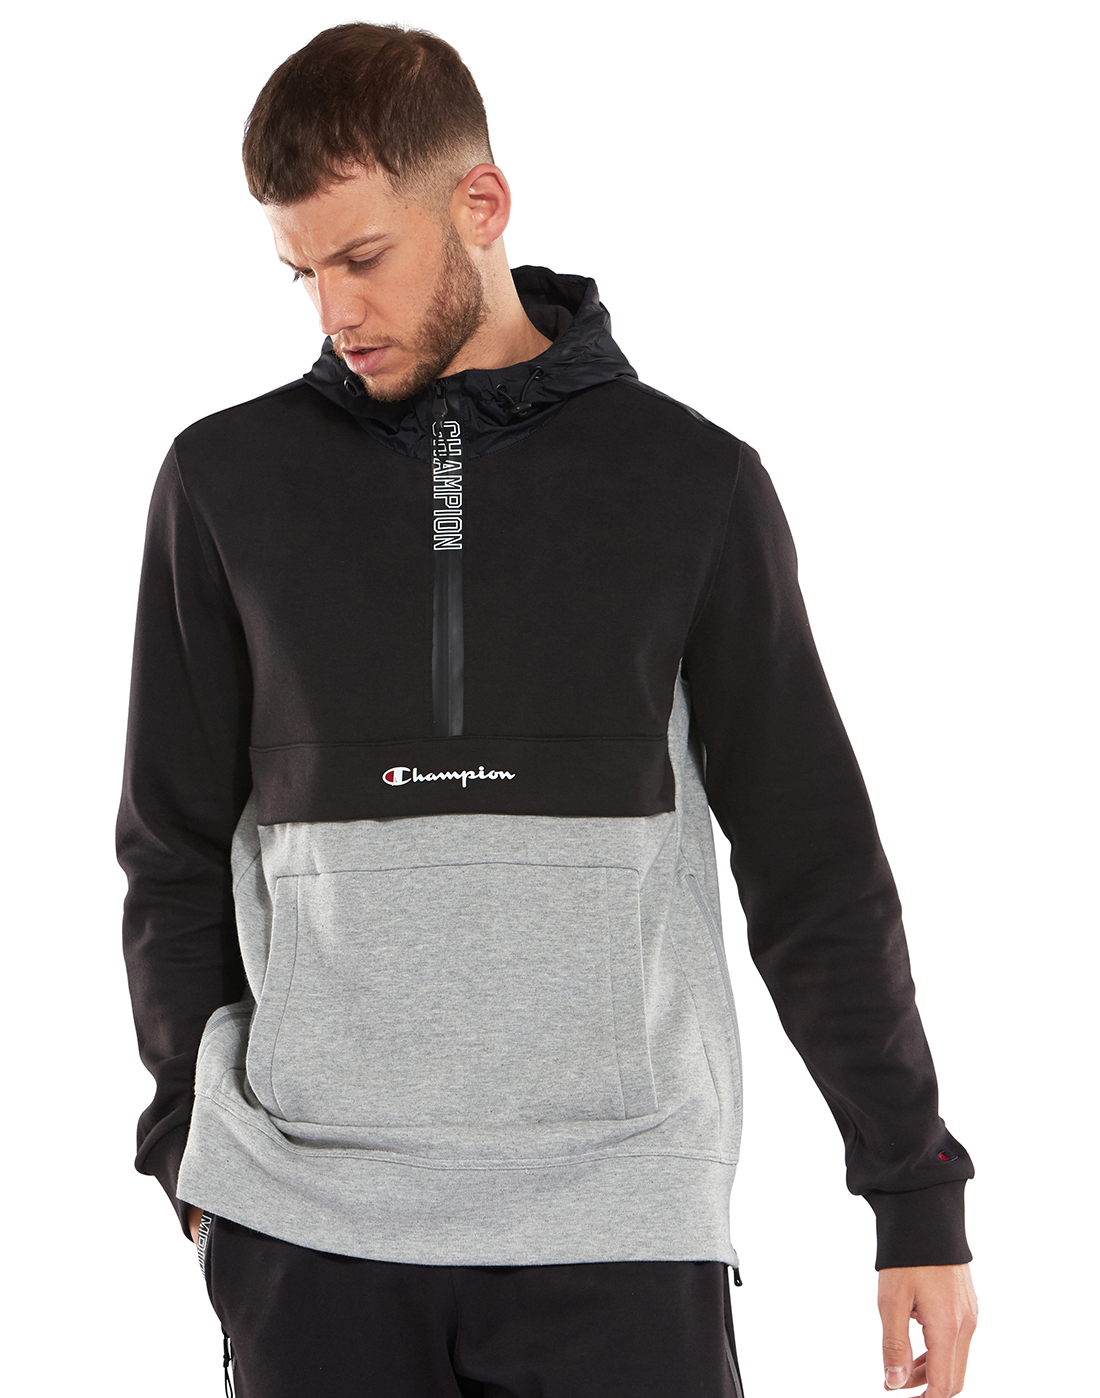 men's champion zip up hoodies